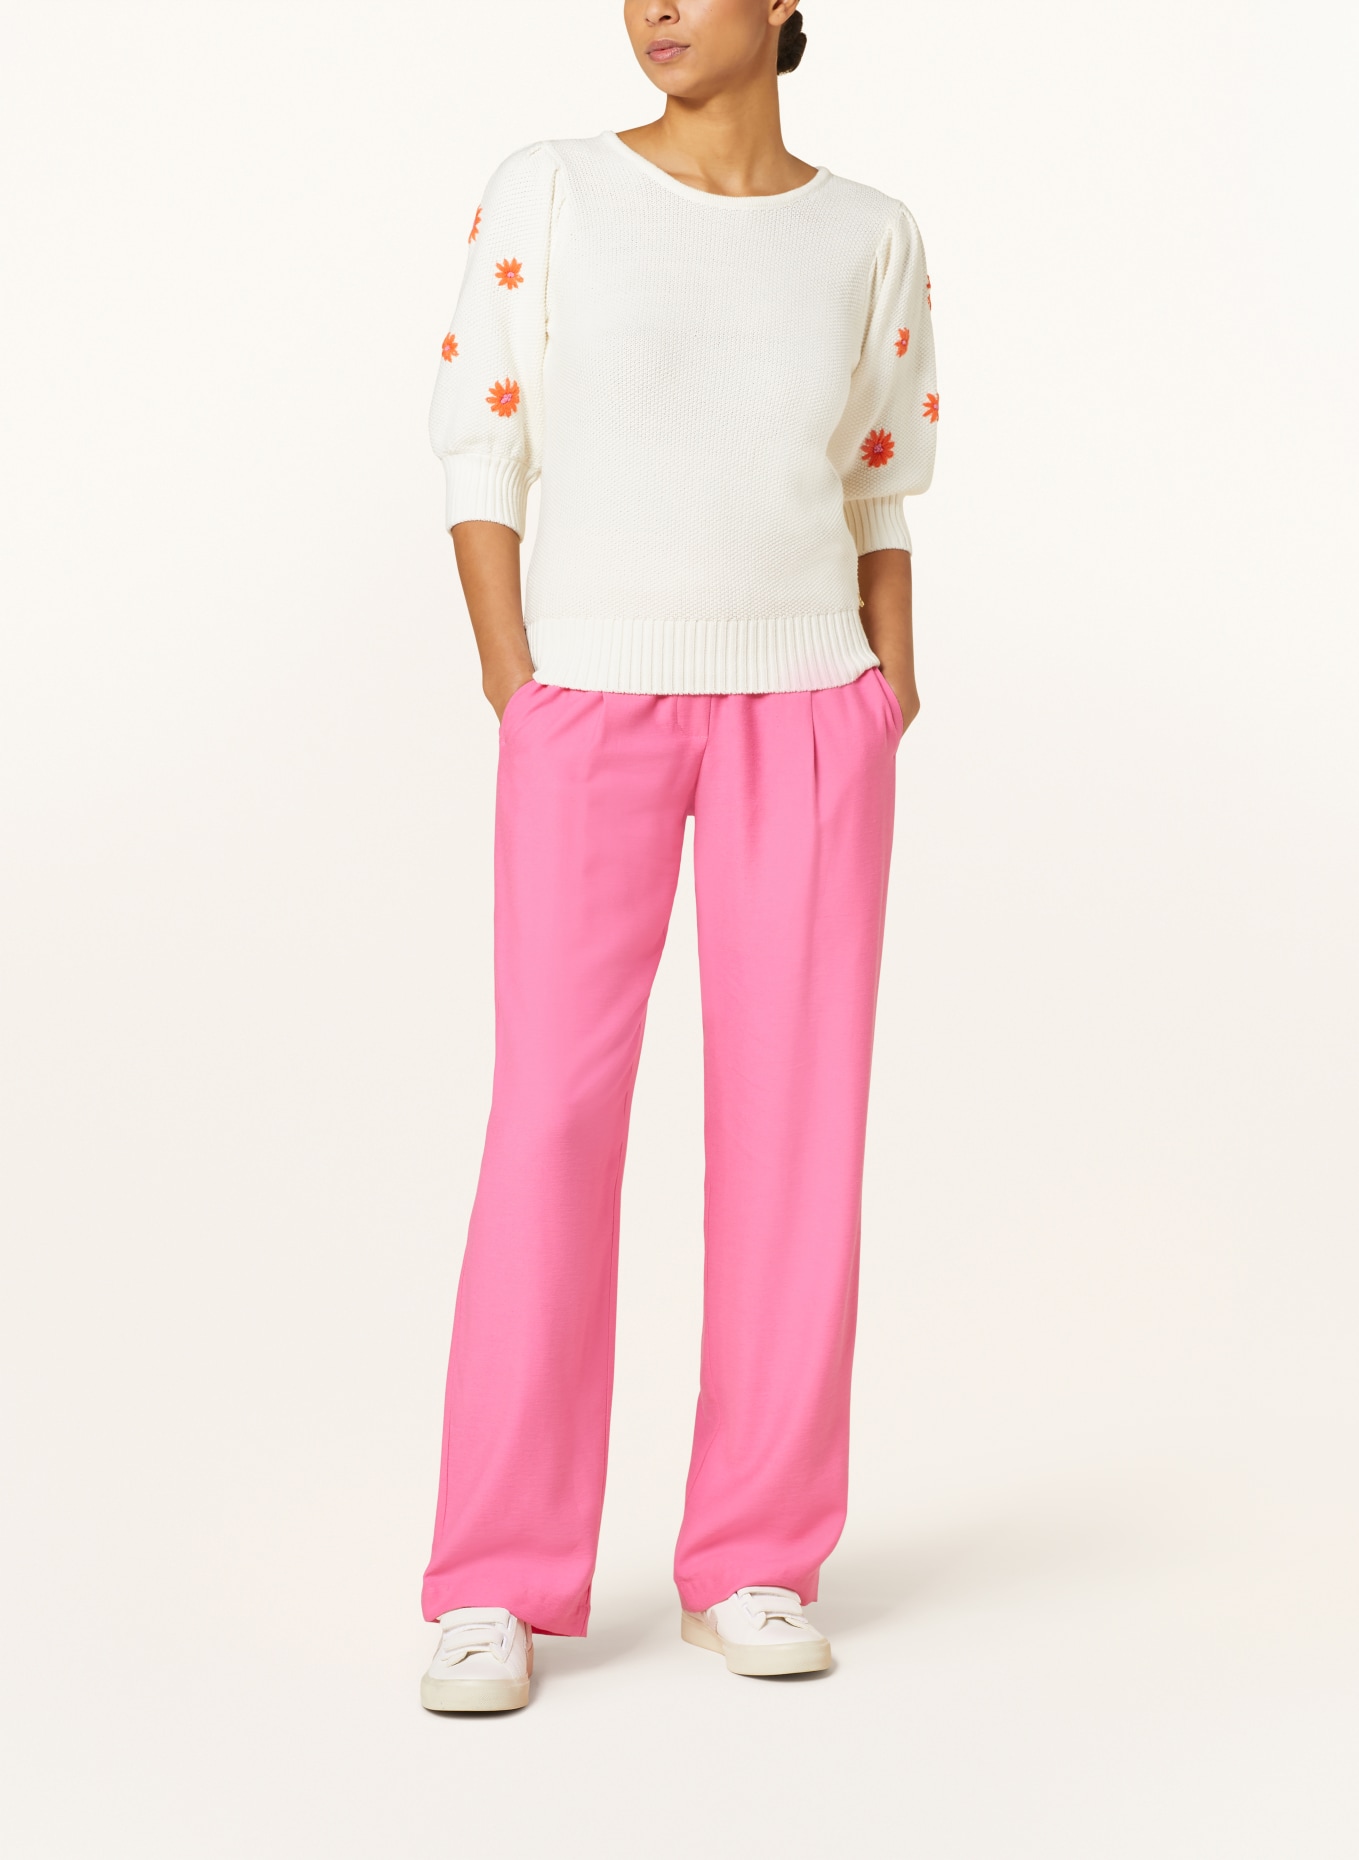 FABIENNE CHAPOT Pullover RICE, Farbe: WEISS/ ORANGE (Bild 2)